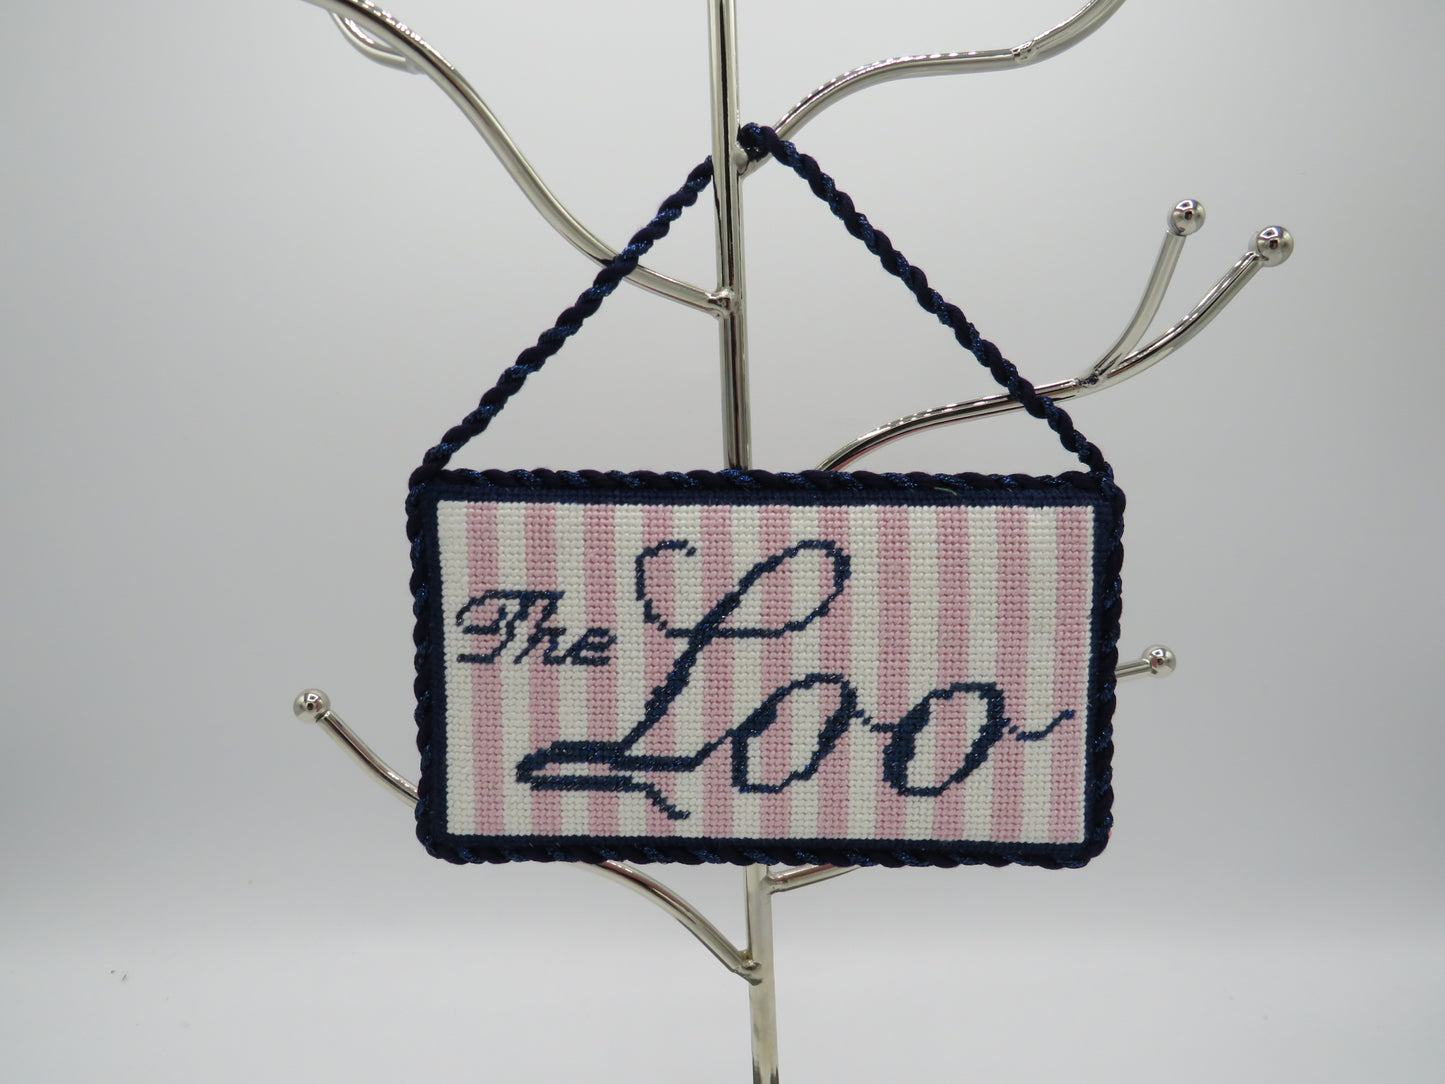 The Loo